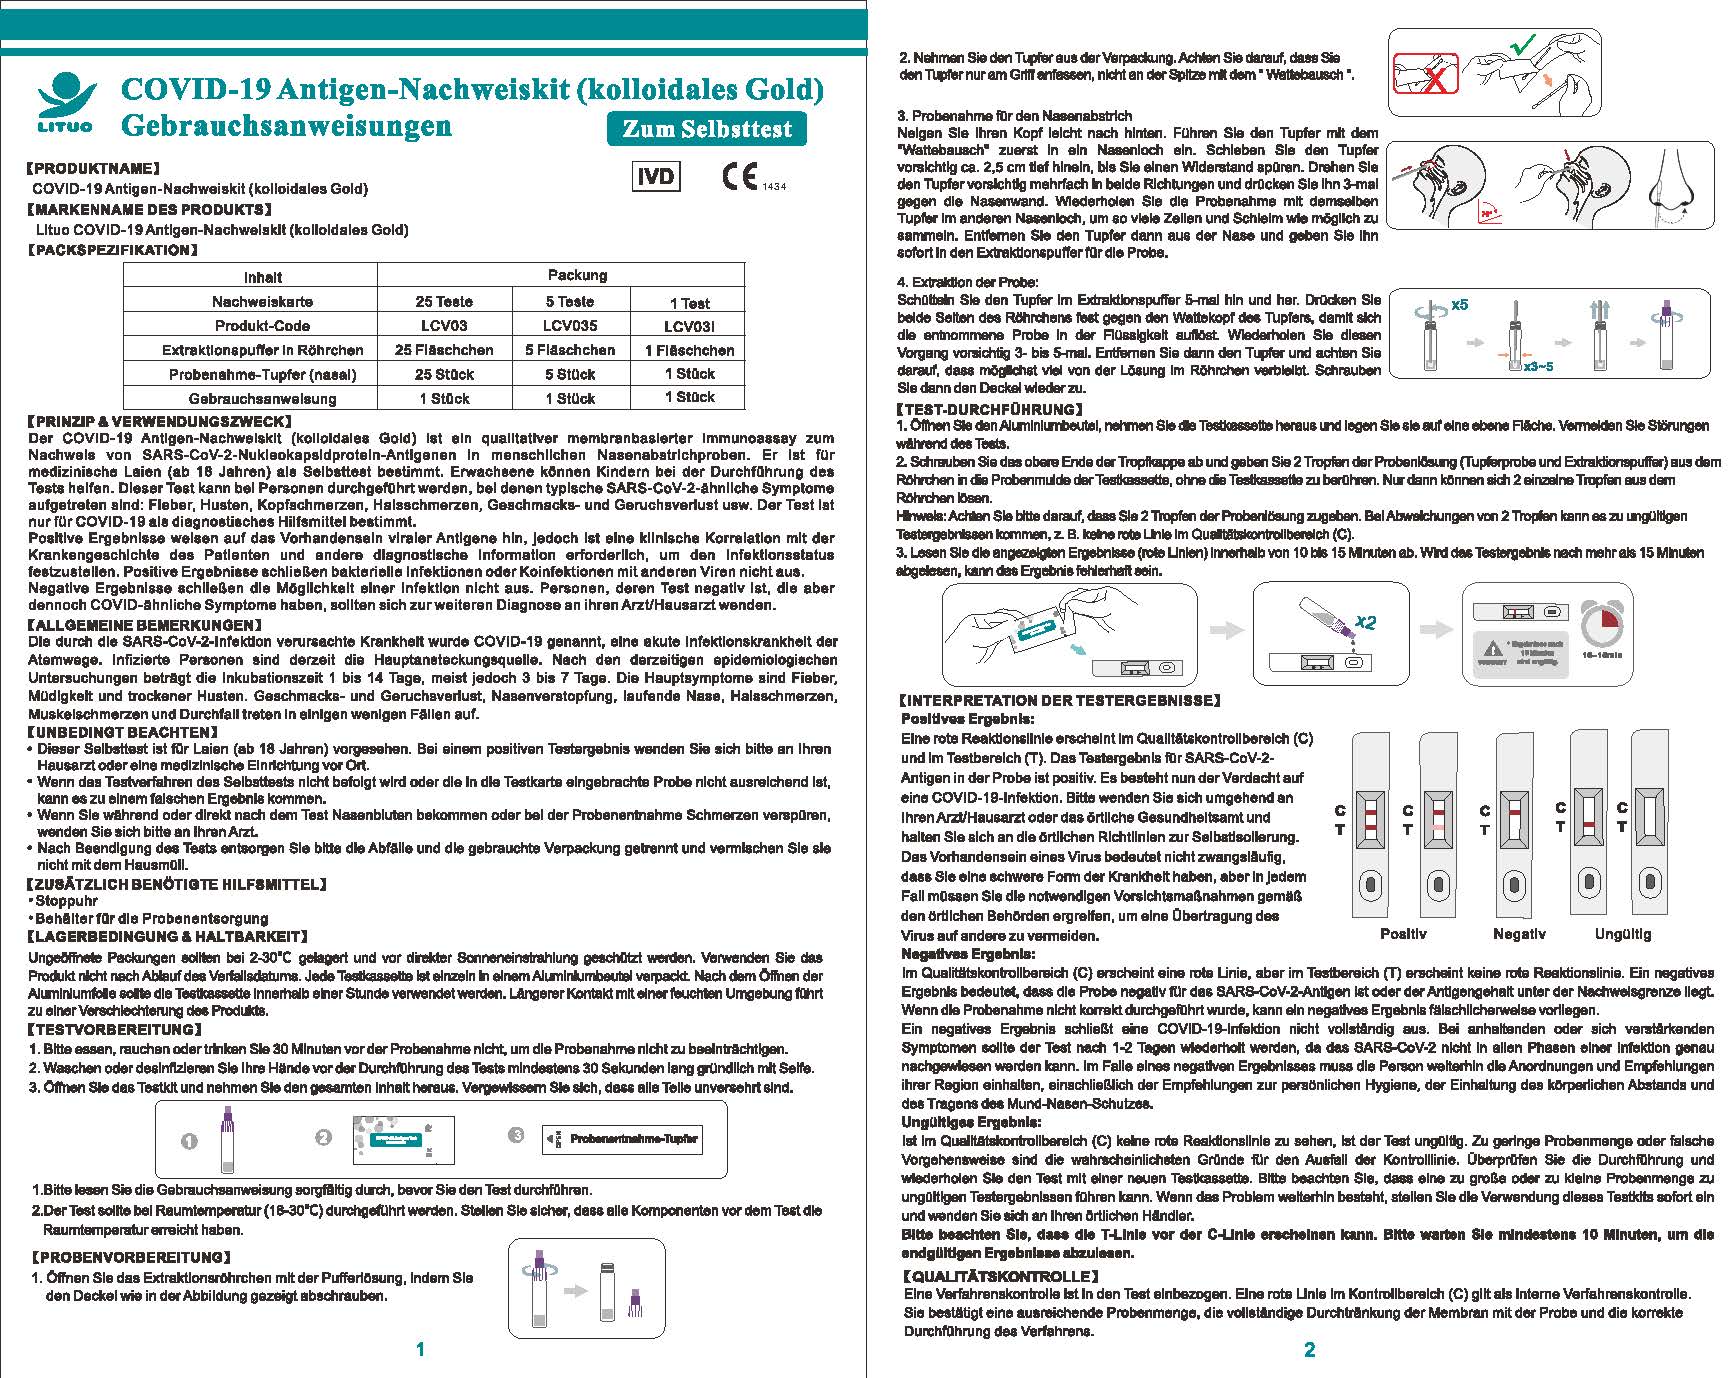     LAIEN LITUO®  Antigen schnelltests NASAL mit CE1434, 1 Karton 500 Tests(Einzelverpackung)